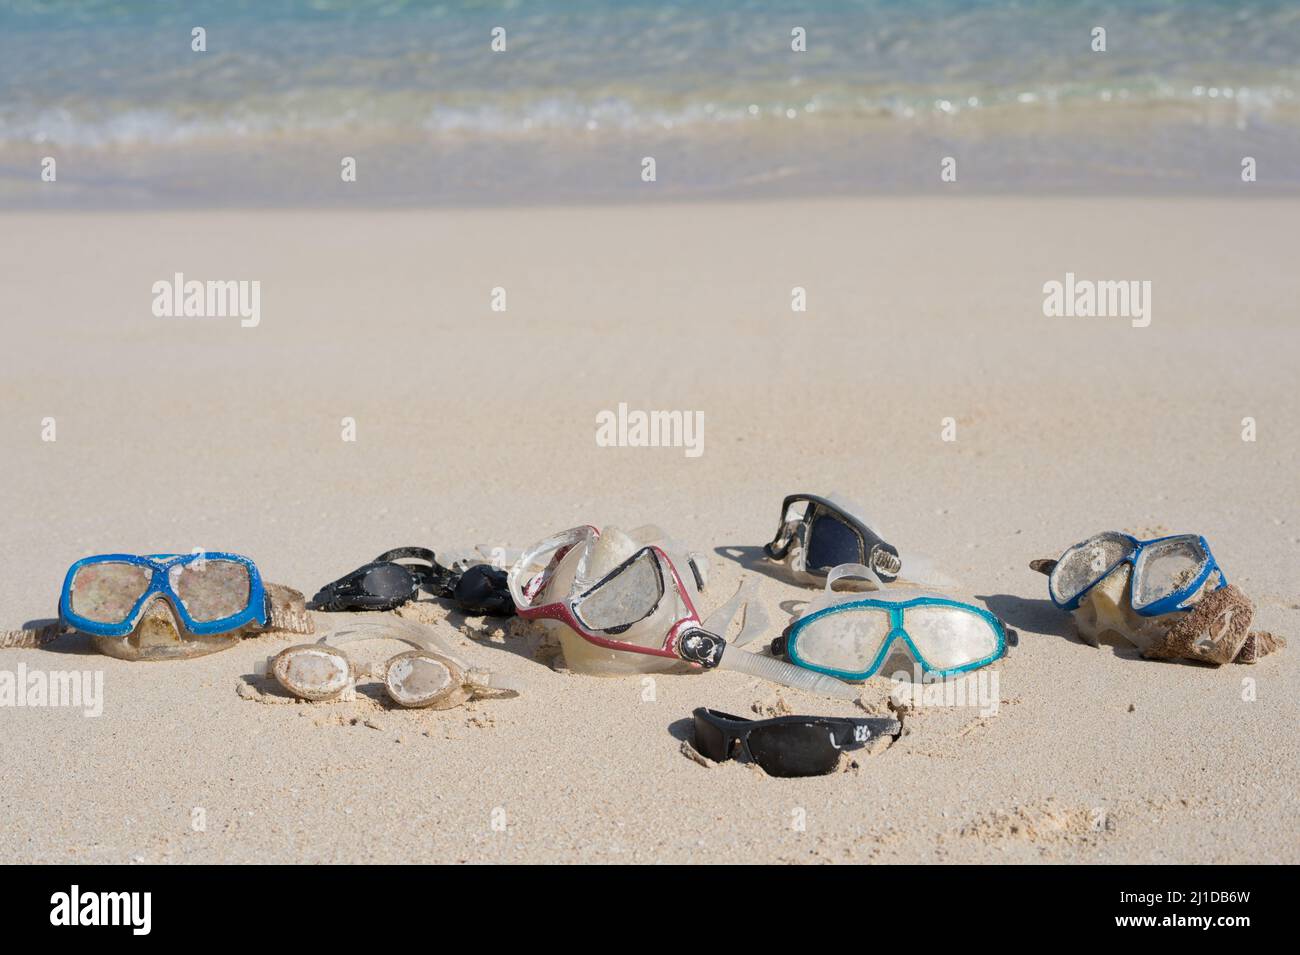 Nuota occhiali e maschere nella sabbia vicino all'acqua su una spiaggia soleggiata. Occhiali smarriti e trovati. Hawaii, Stati Uniti Foto Stock